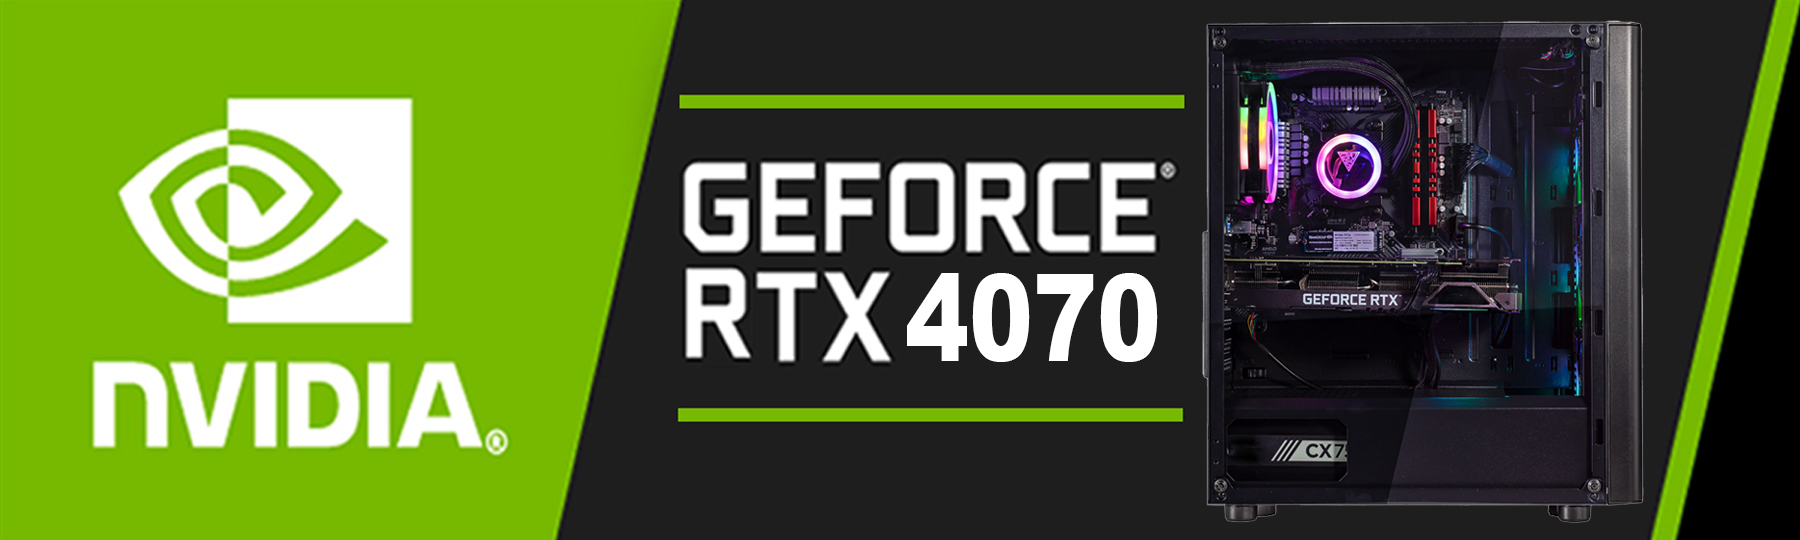 GeForce RTX 4070 12GB, 12GB GDDR6X PCIe 4.0 DLSS3, 5888 CUDA Cores, 1.92GHz Base, 192bit Memory, 4th